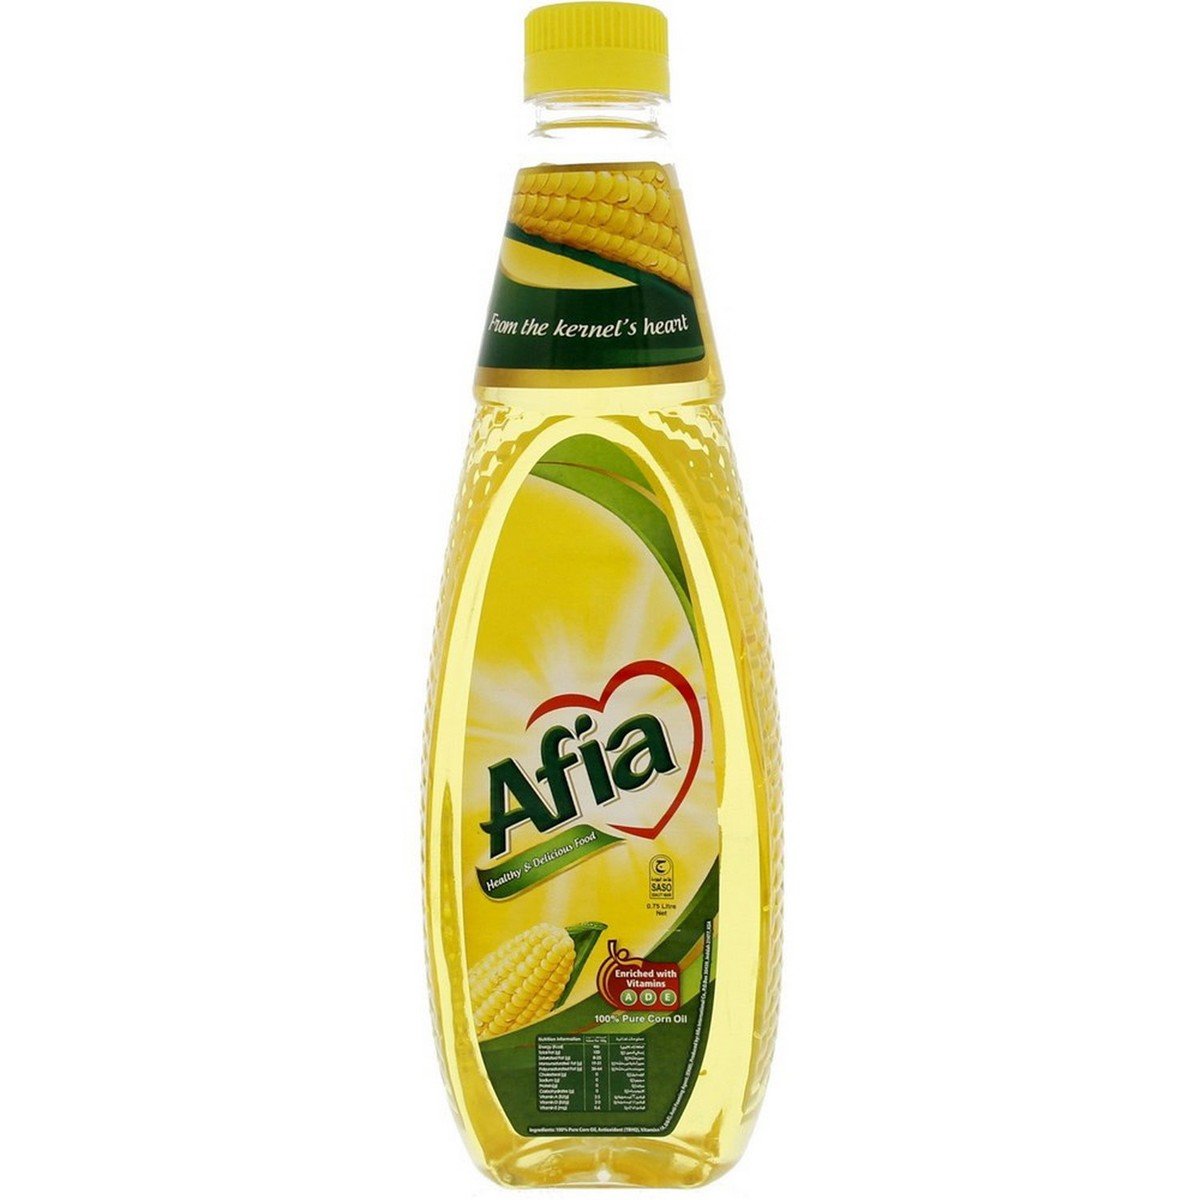 Afia Pure Corn Oil 750ml